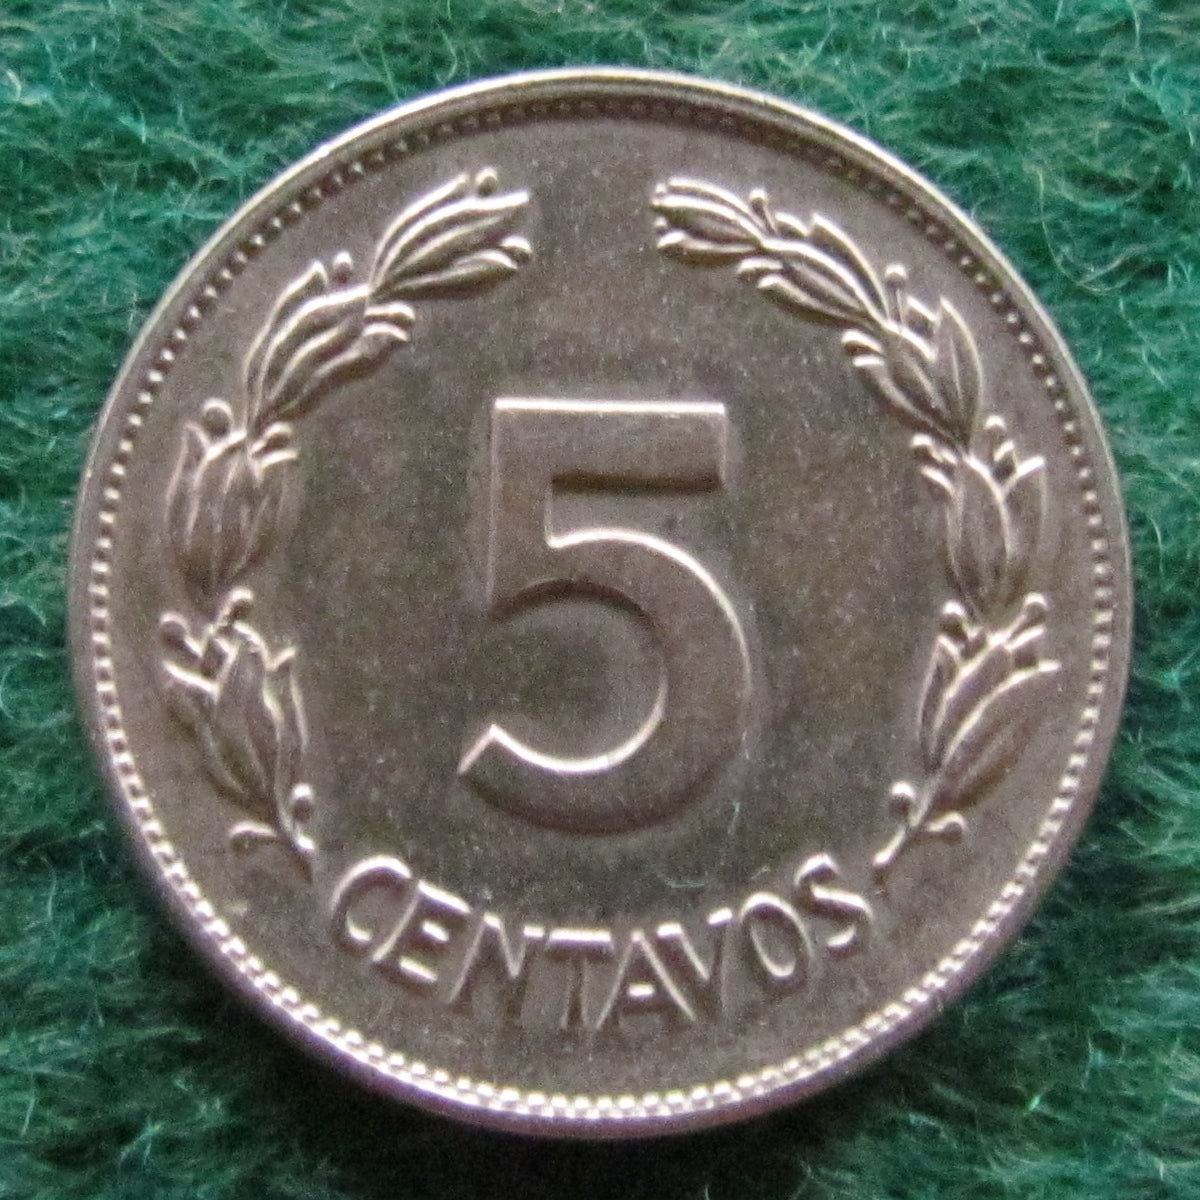 Ecuador 1945 5 Centavos Coin - Circulated